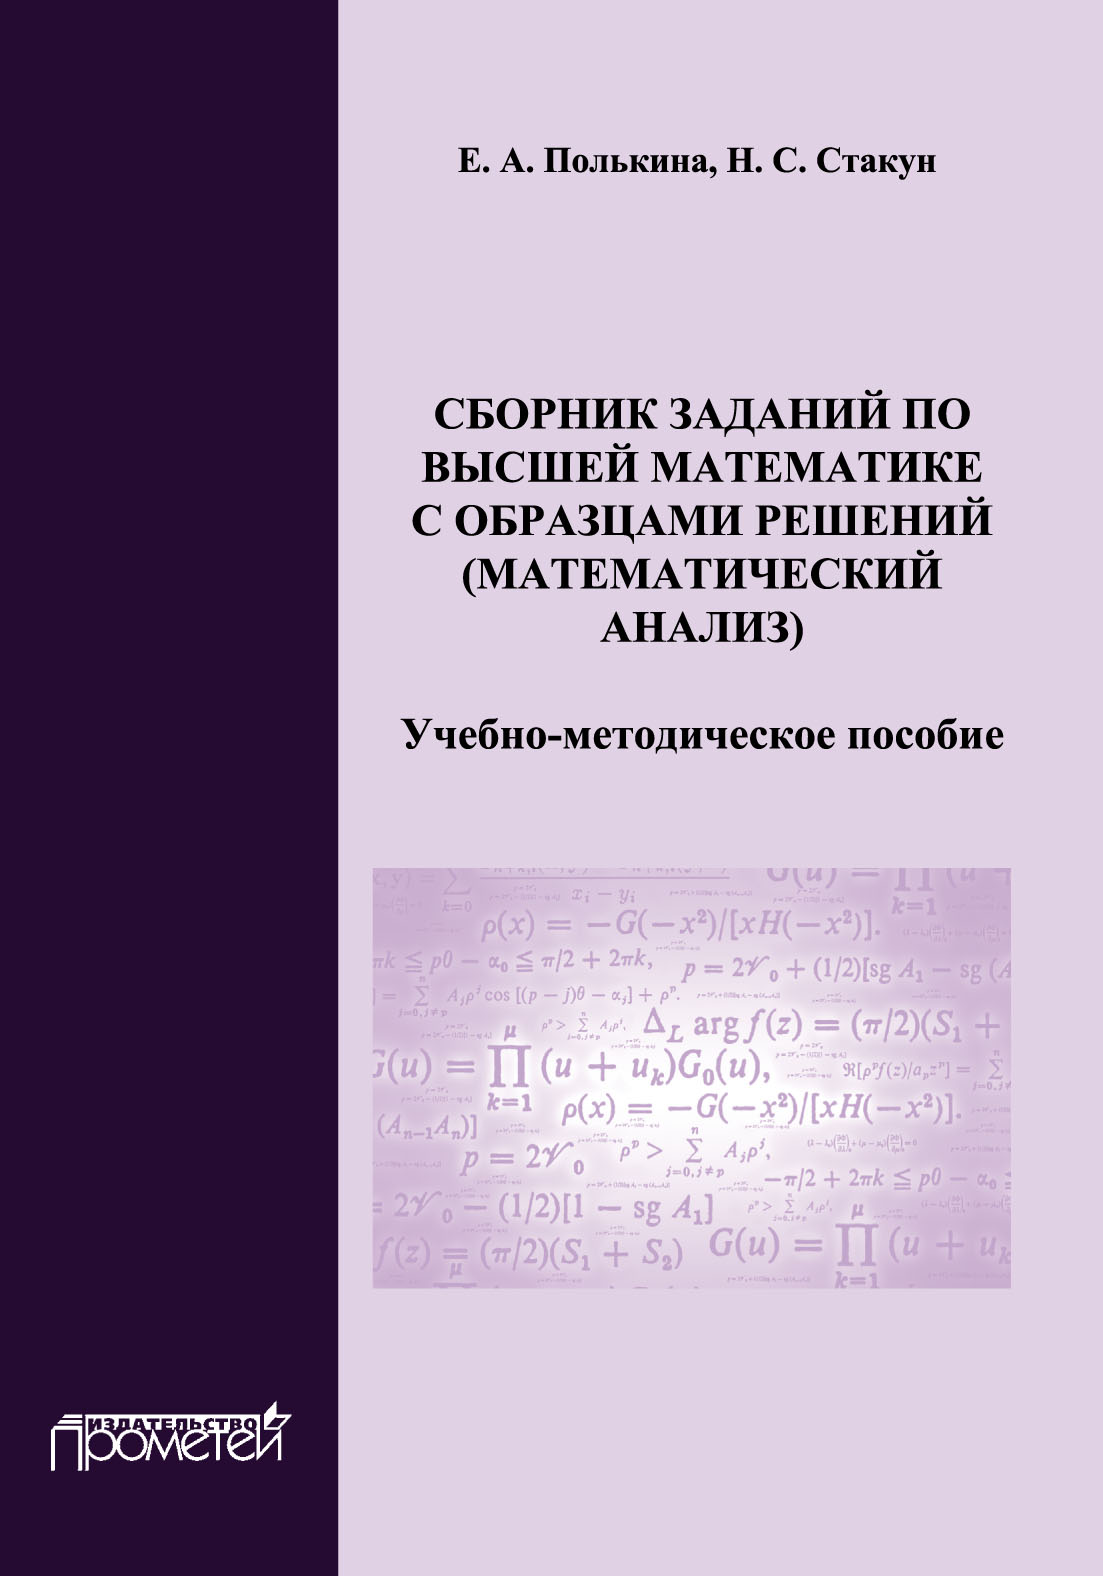 Сборник заданий по высшей математике с образцами решений (математический анализ)